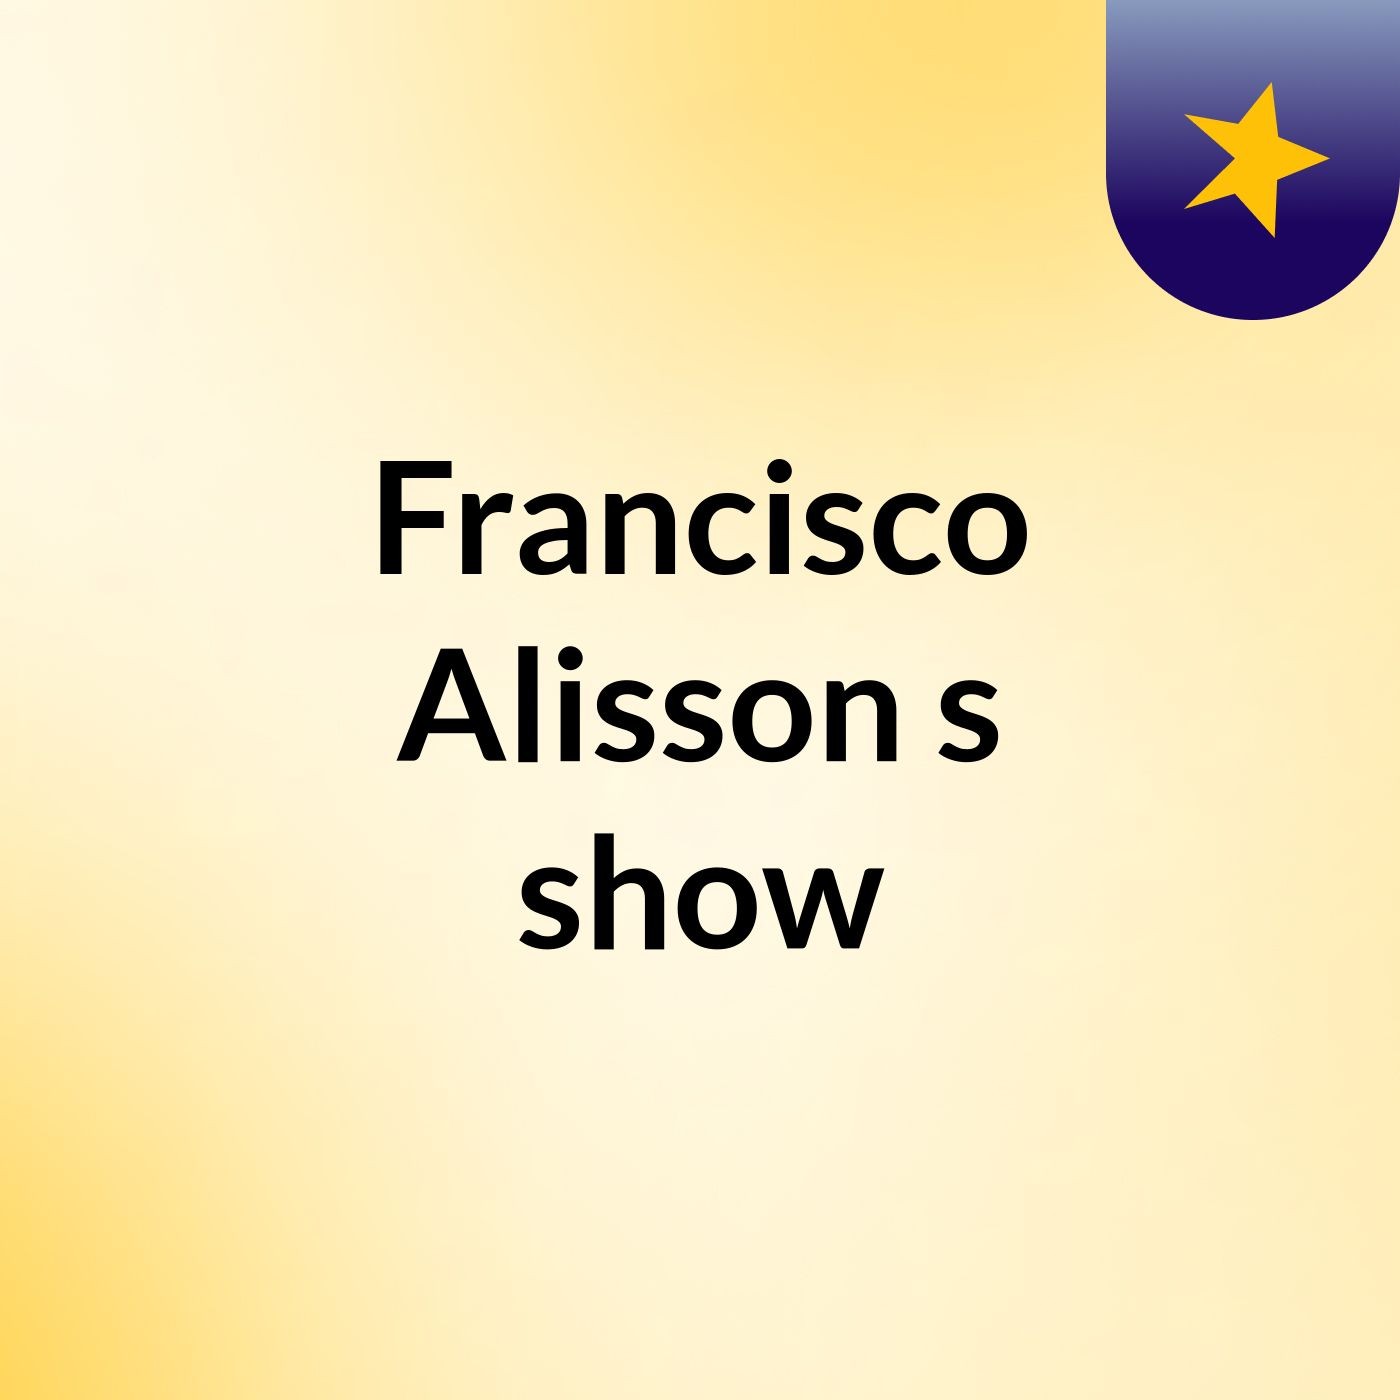 Francisco Alisson's show